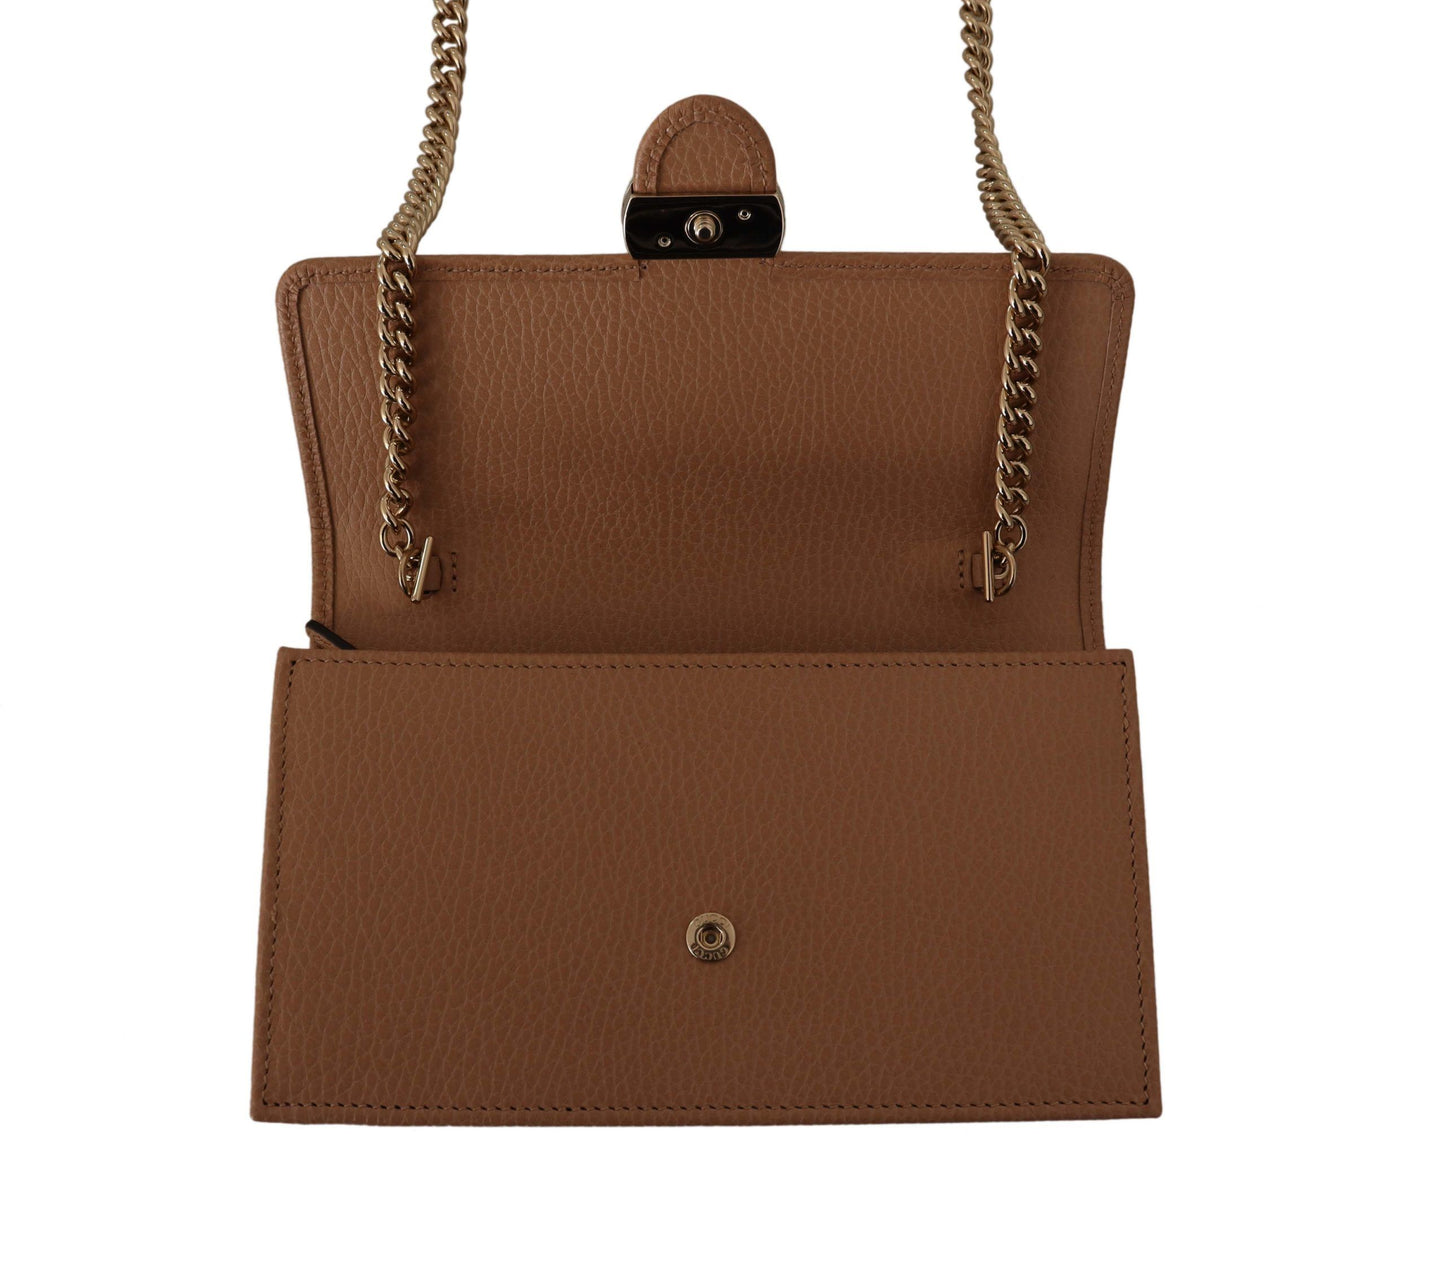 Elegant Beige Leather Shoulder Bag